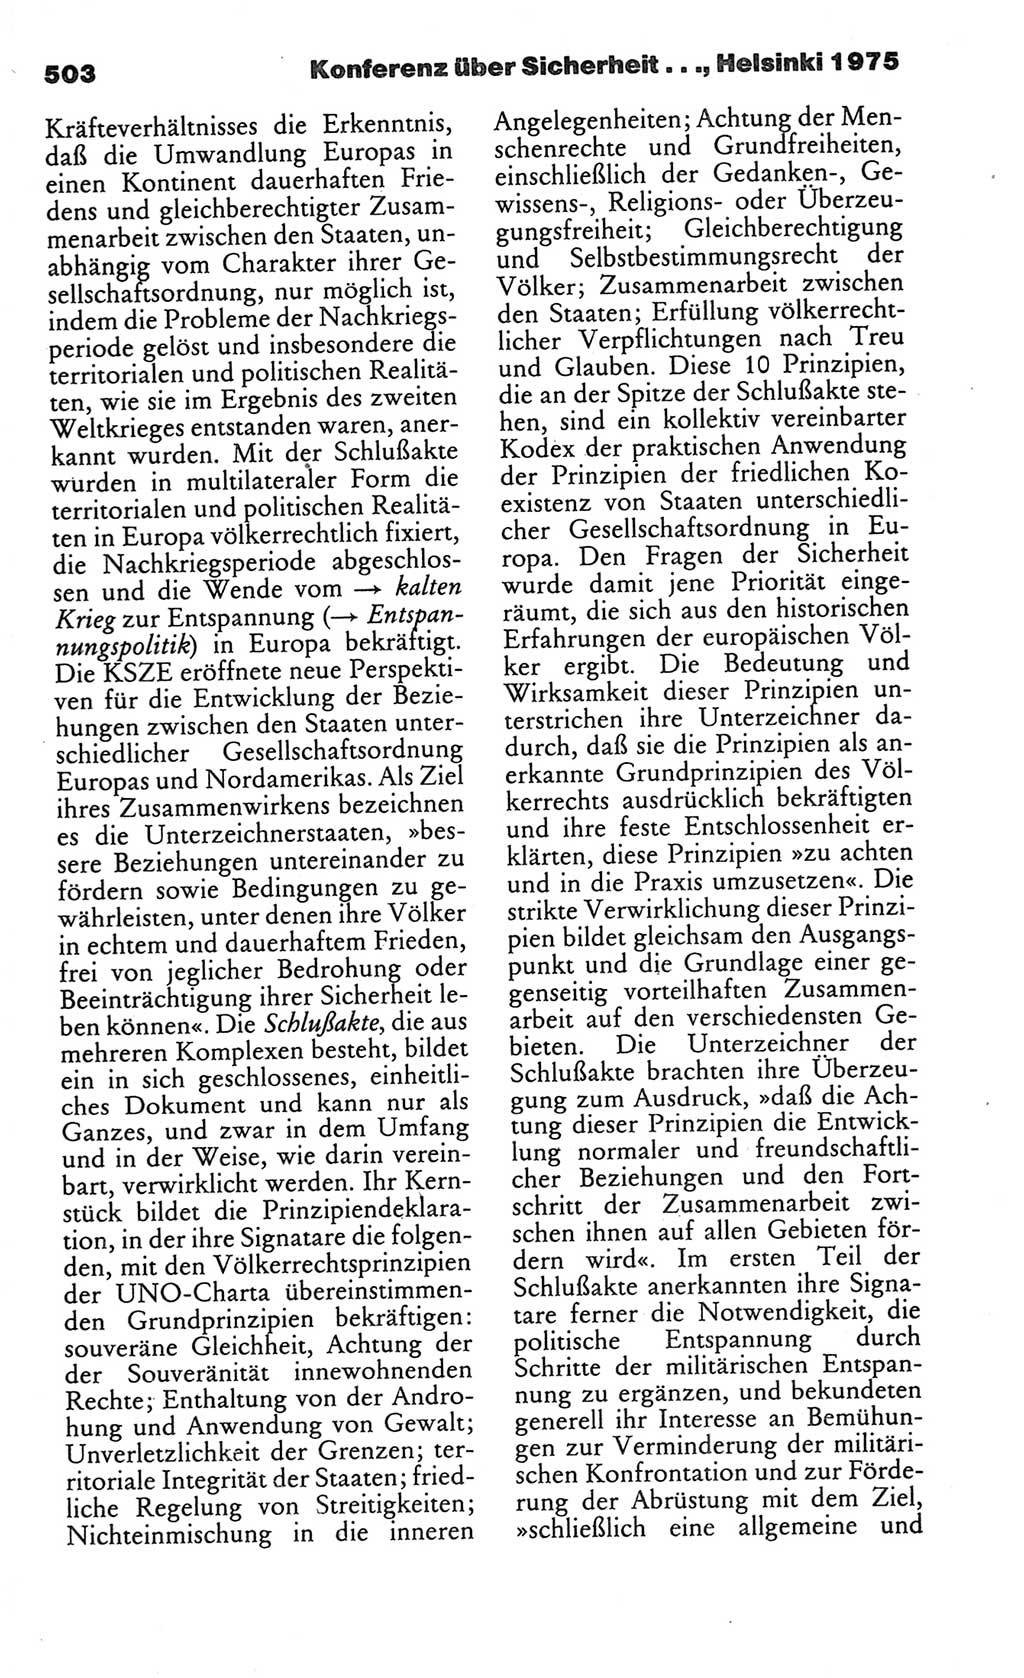 Kleines politisches Wörterbuch [Deutsche Demokratische Republik (DDR)] 1986, Seite 503 (Kl. pol. Wb. DDR 1986, S. 503)